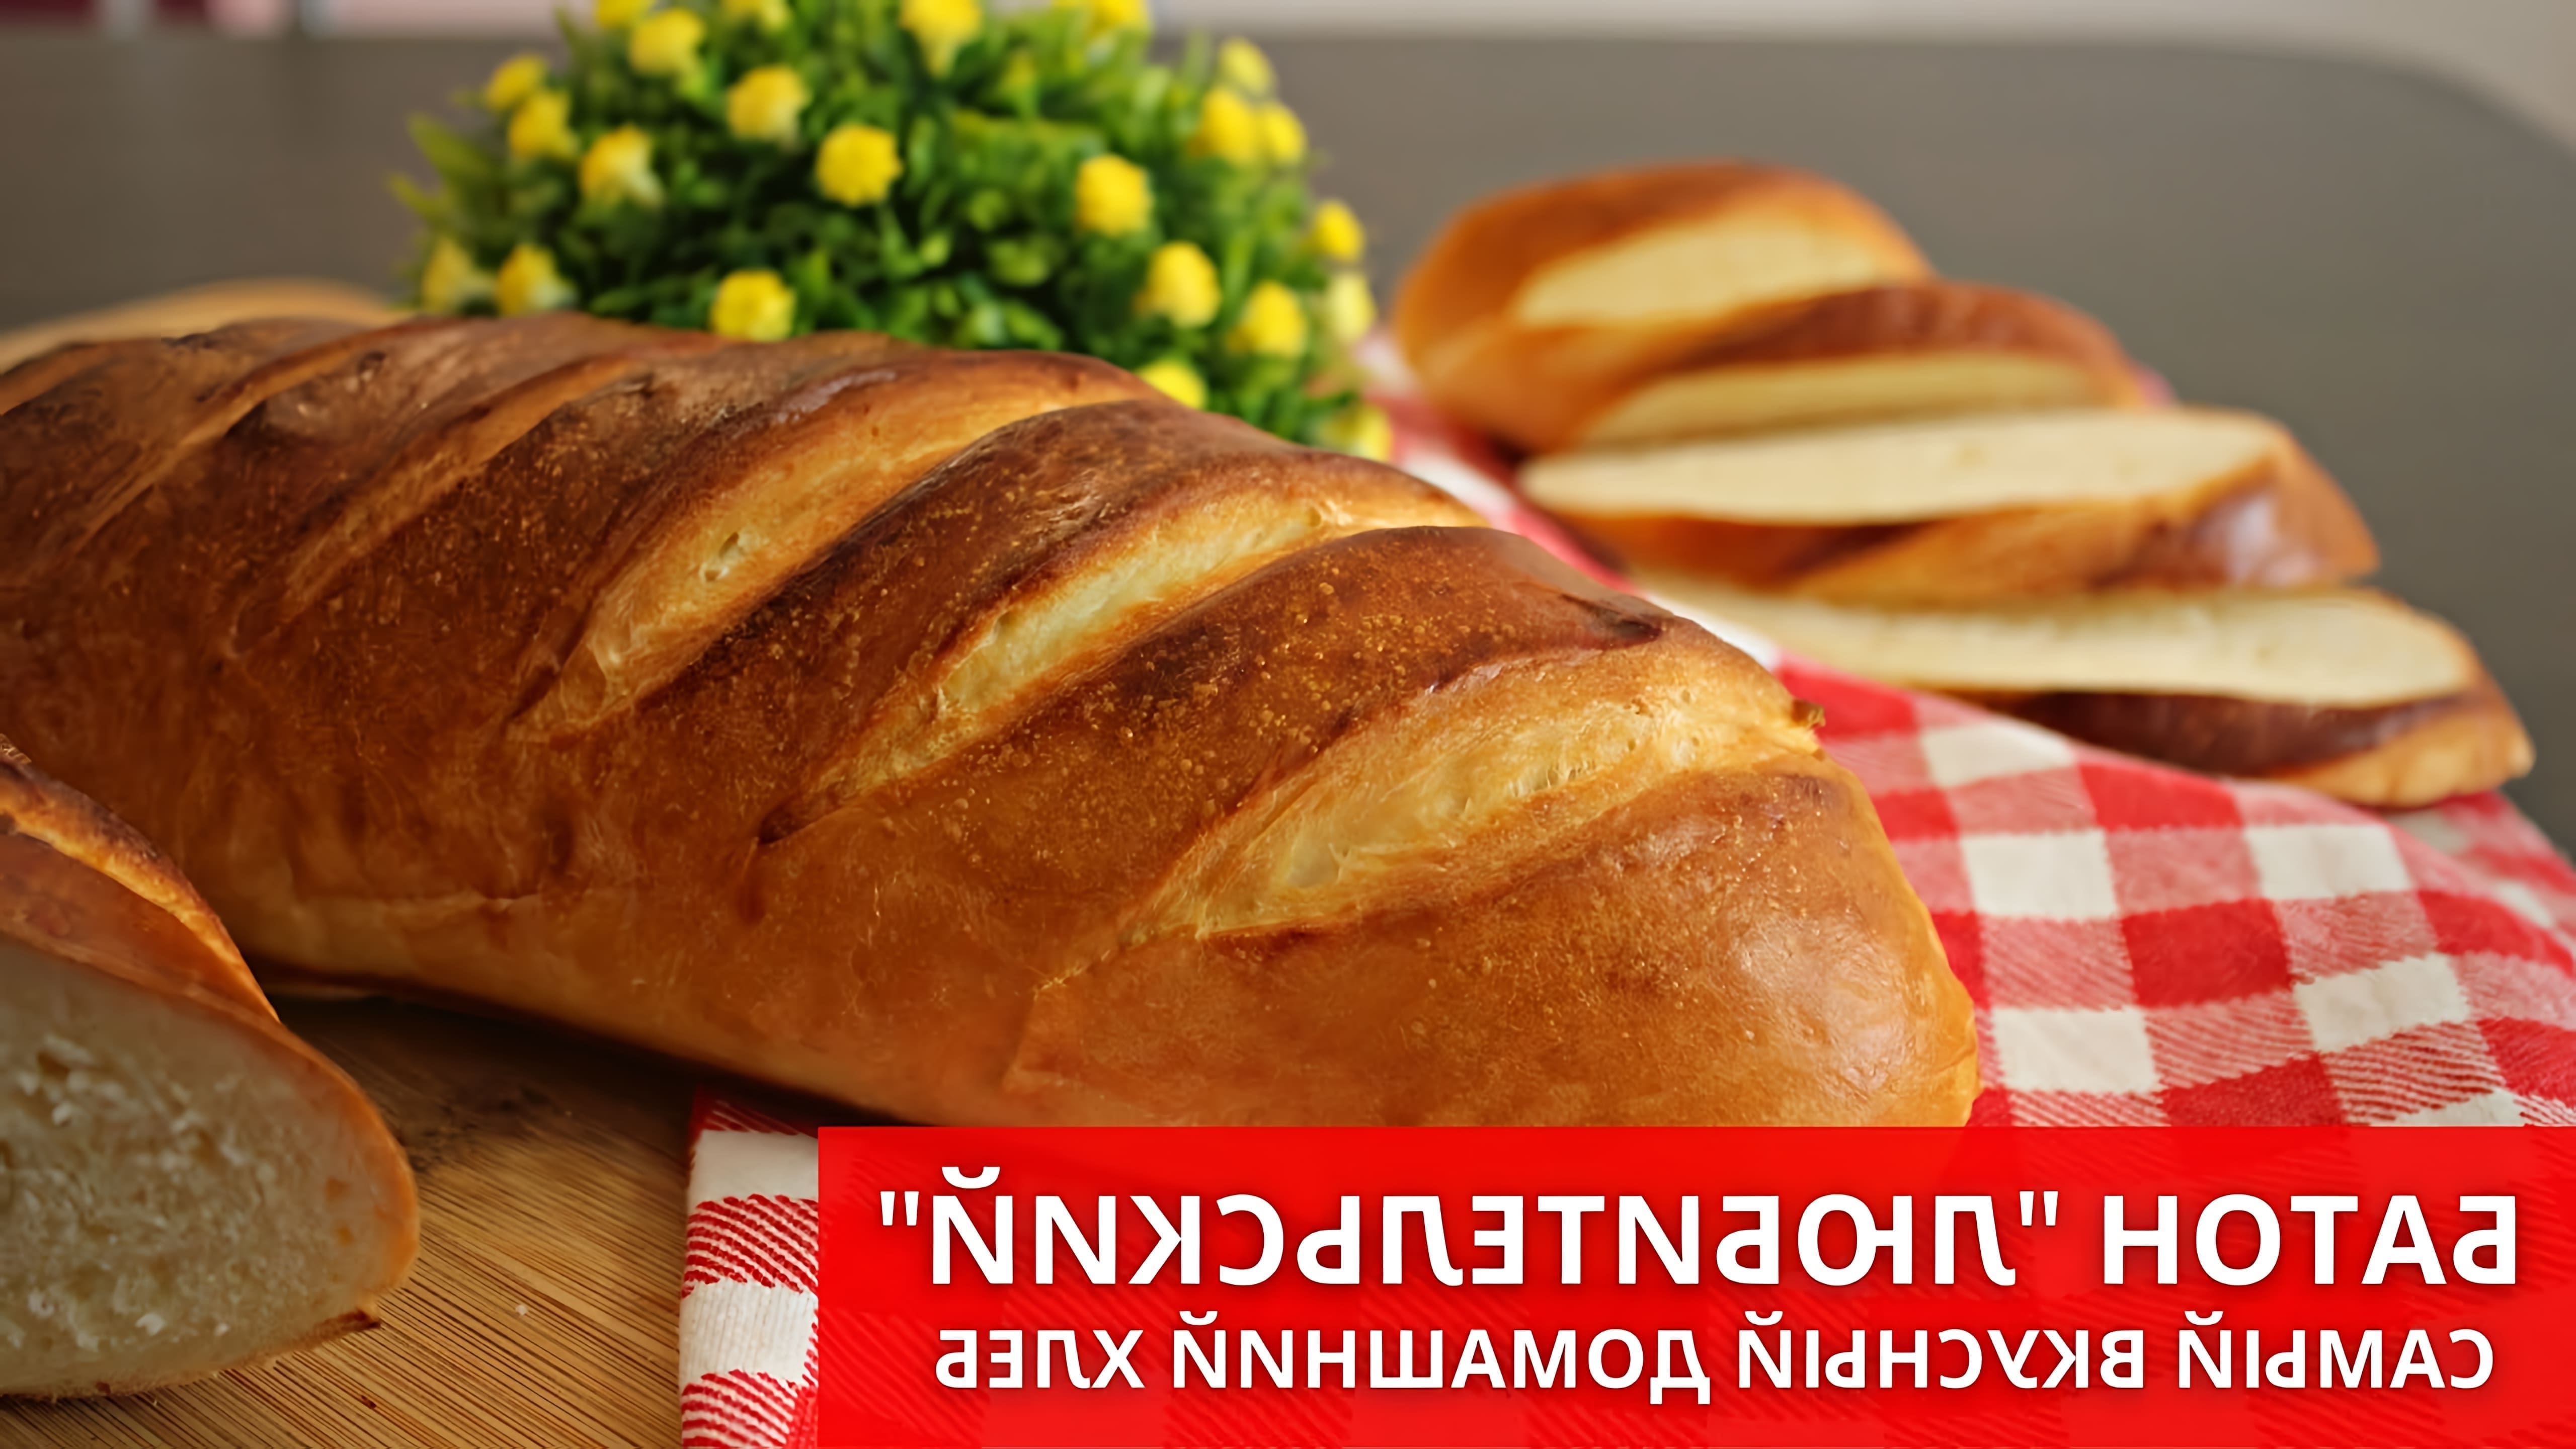 В этом видео-ролике Юлякиченлеб делится своим рецептом приготовления домашнего хлеба по ГОСТу без использования хлебопечки